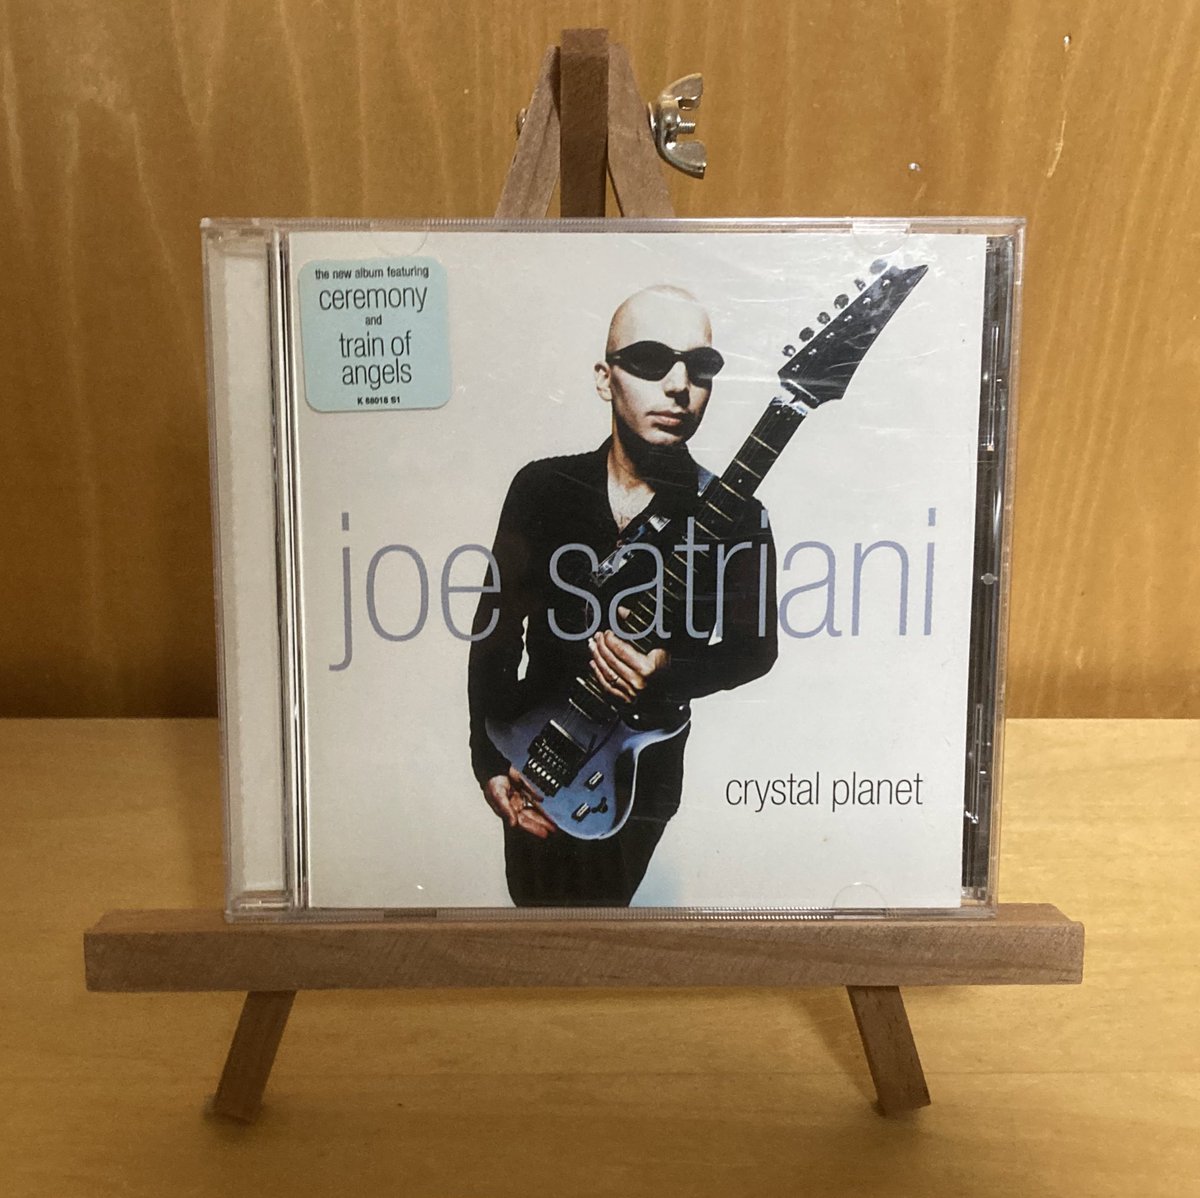 今宵 ギターインスト🎸で
#JoeSatriani
1998年
✨🎸『Crytal Planet』🎸✨

彼の軽快な超絶技巧ギター聴きながら…明日に備えます🎸👍

1999年度グラミー賞ベスト・ロック・インストゥルメンタル・パフォーマンス部門ノミネート曲
⑪A Train Of Angels😆🎸
youtu.be/pUGaQU0yTPA?si…